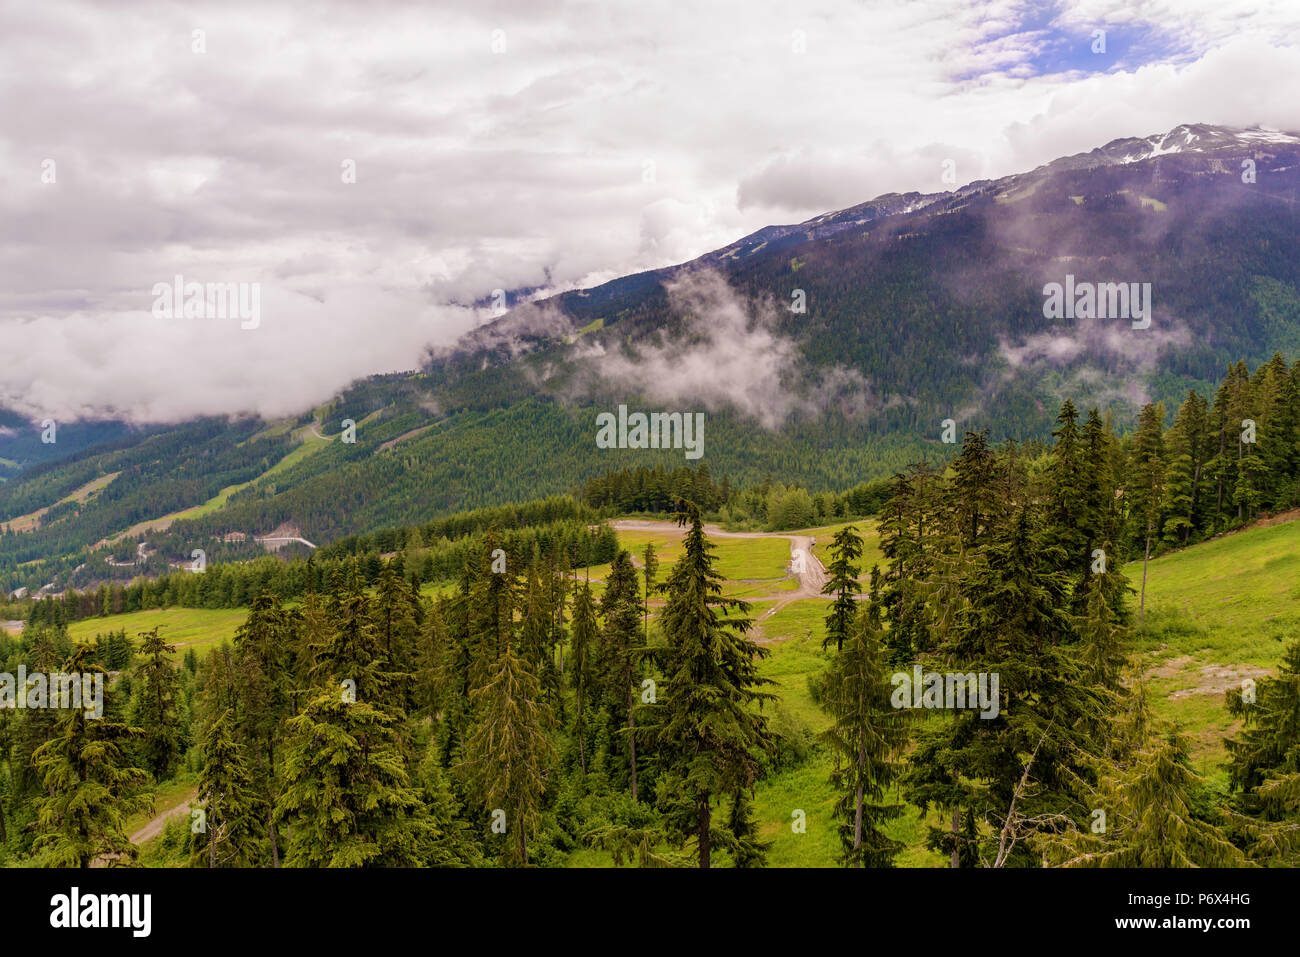 Nubes blancas mullidas sobre montañas boscosas con caminos, árboles coníferos y nieve en la parte superior Foto de stock